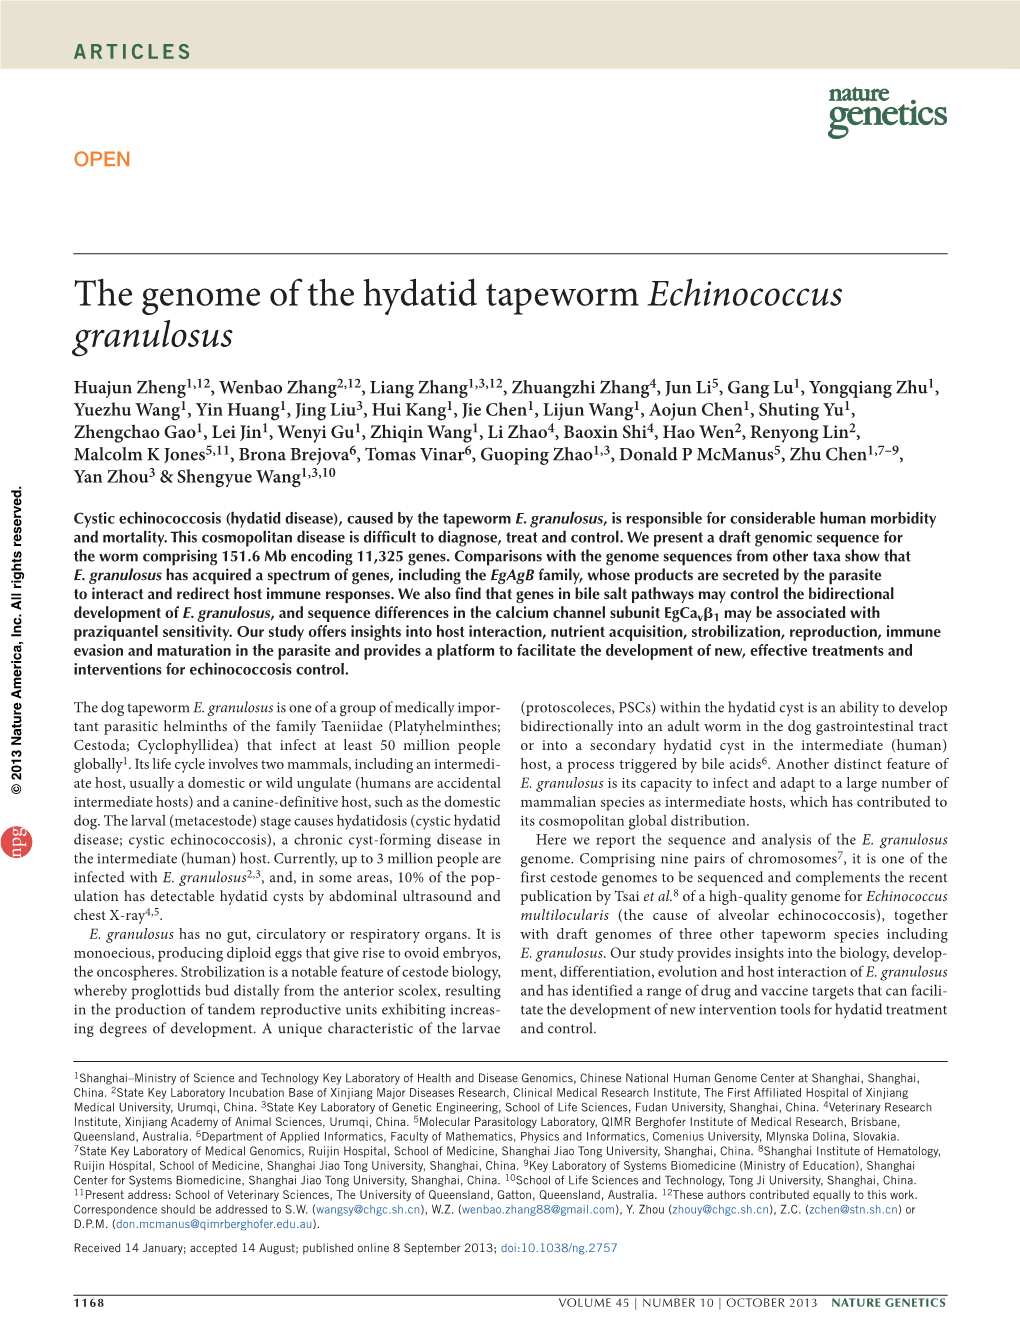 The Genome of the Hydatid Tapeworm Echinococcus Granulosus